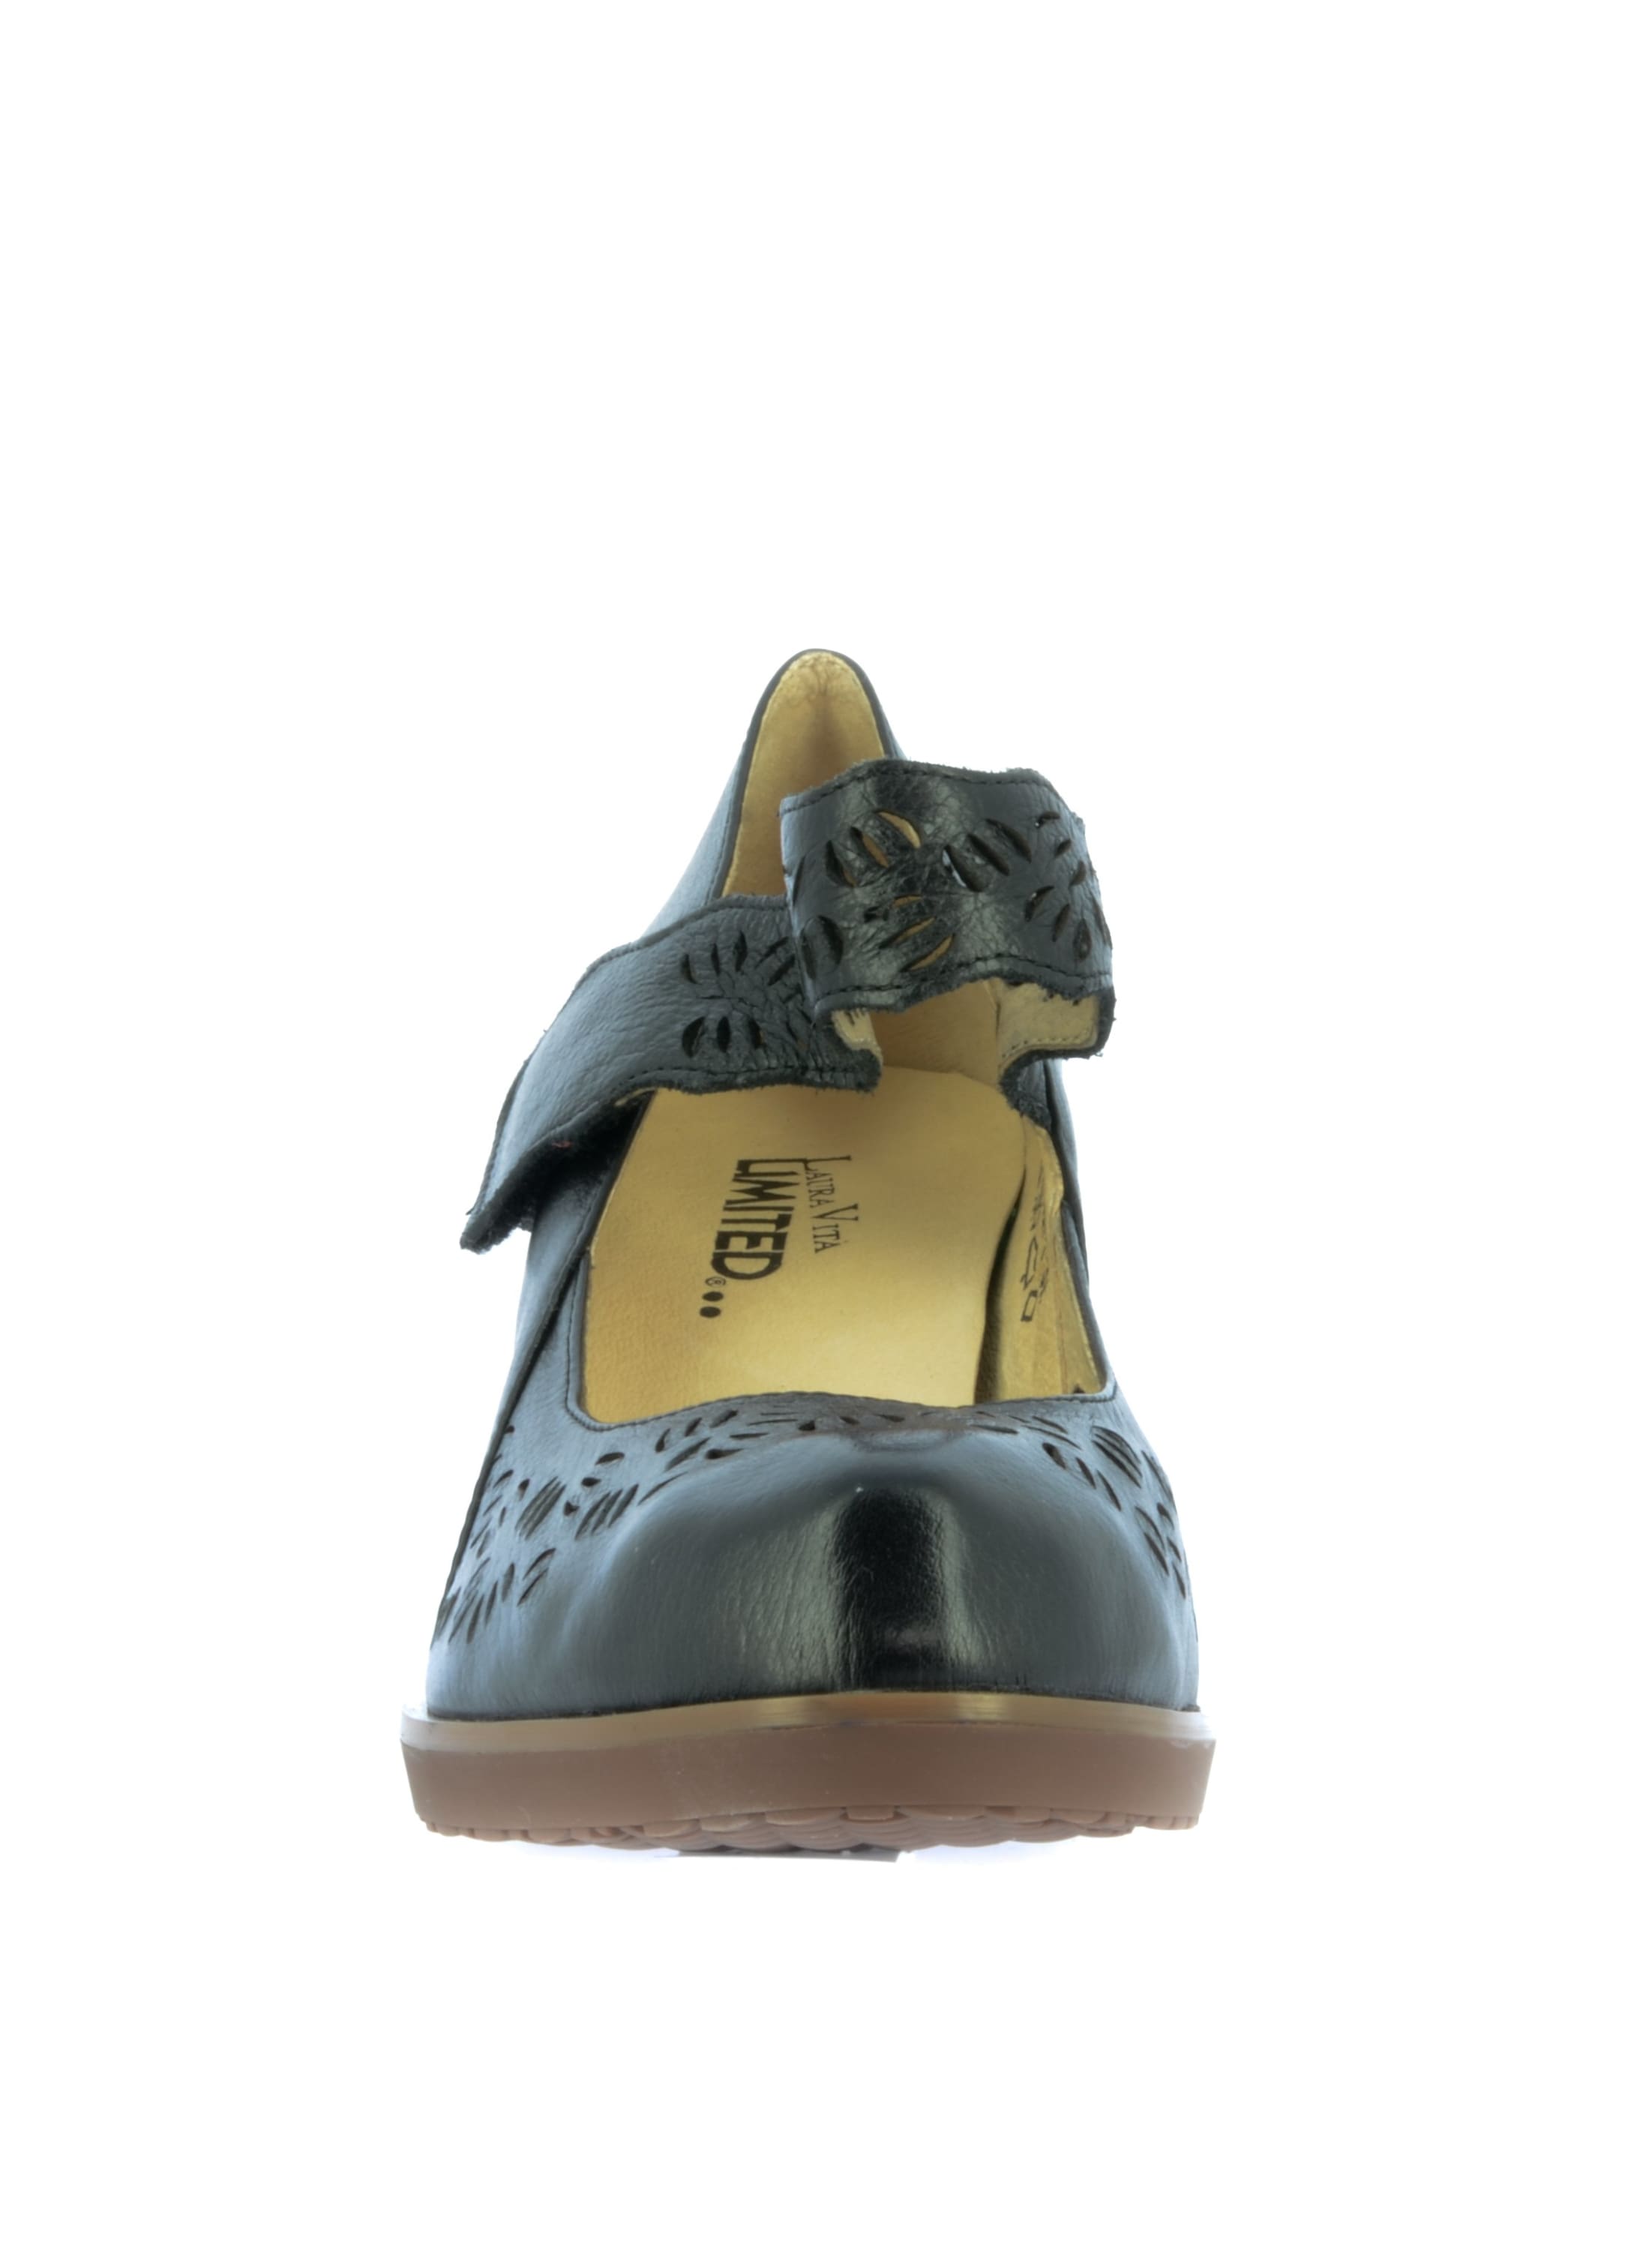 Zapato FLCAMANTO01 - Zapato de salón